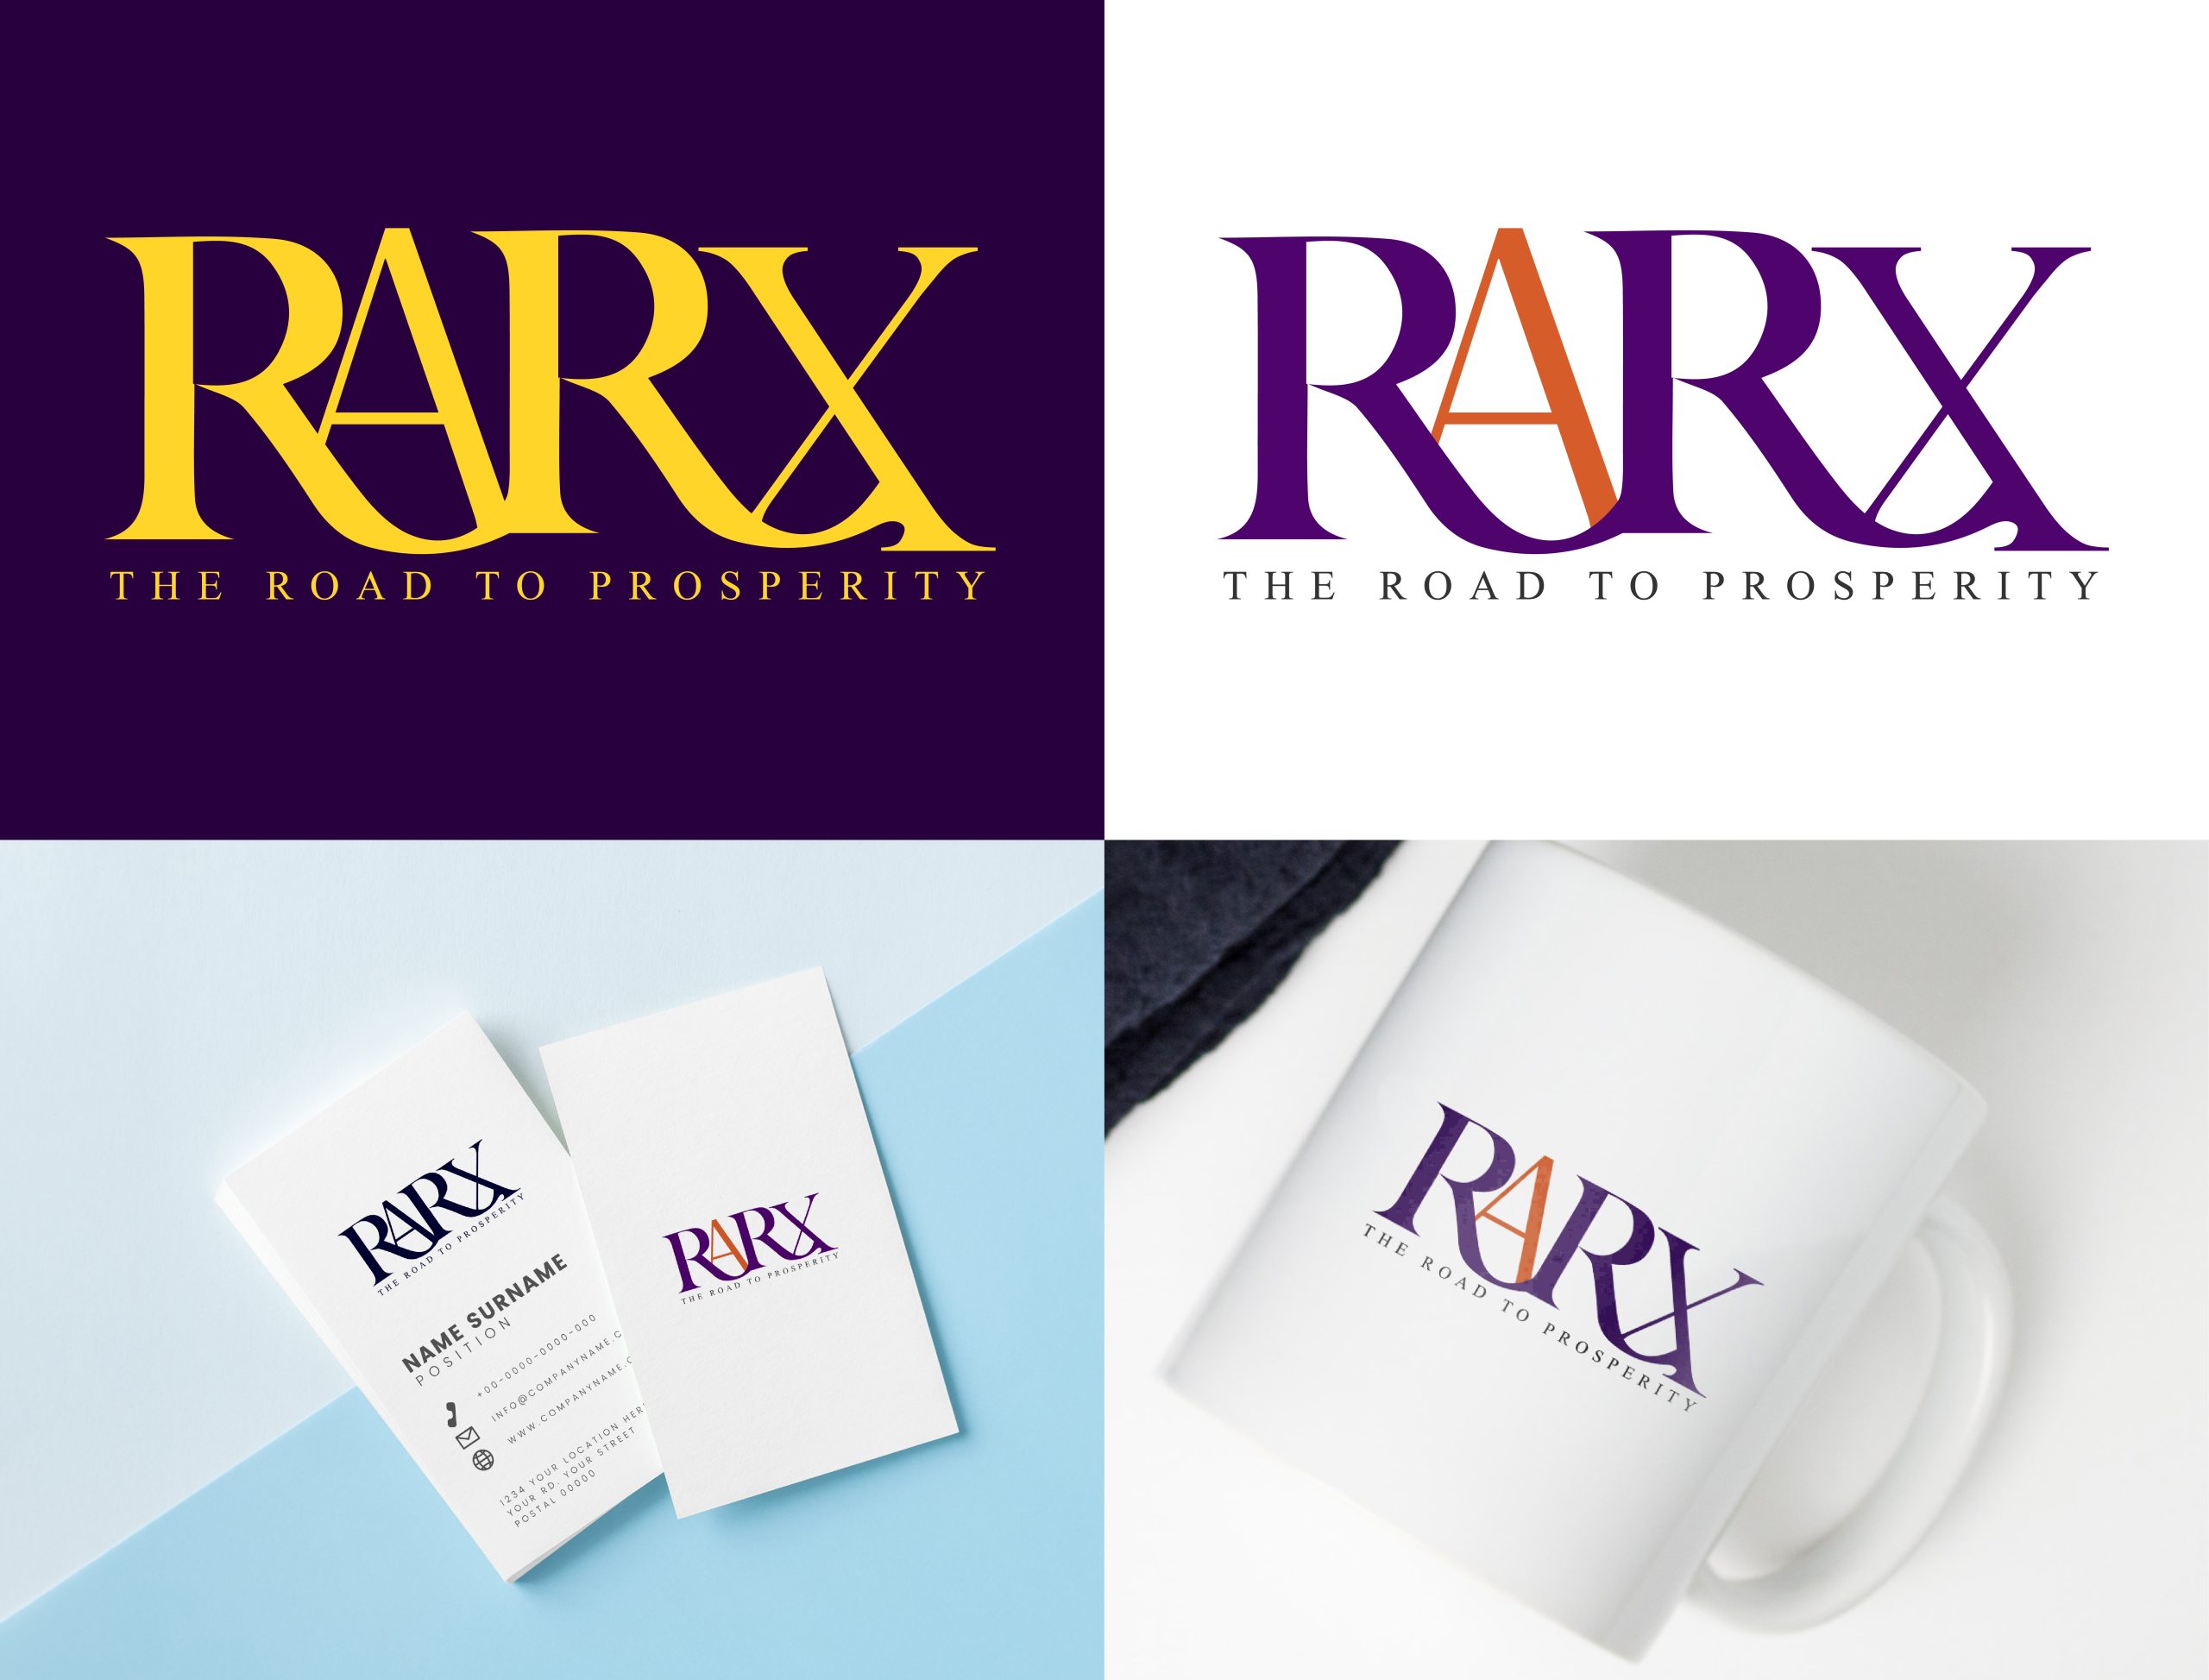 RARX - THE ROAD TO PROSPERITY